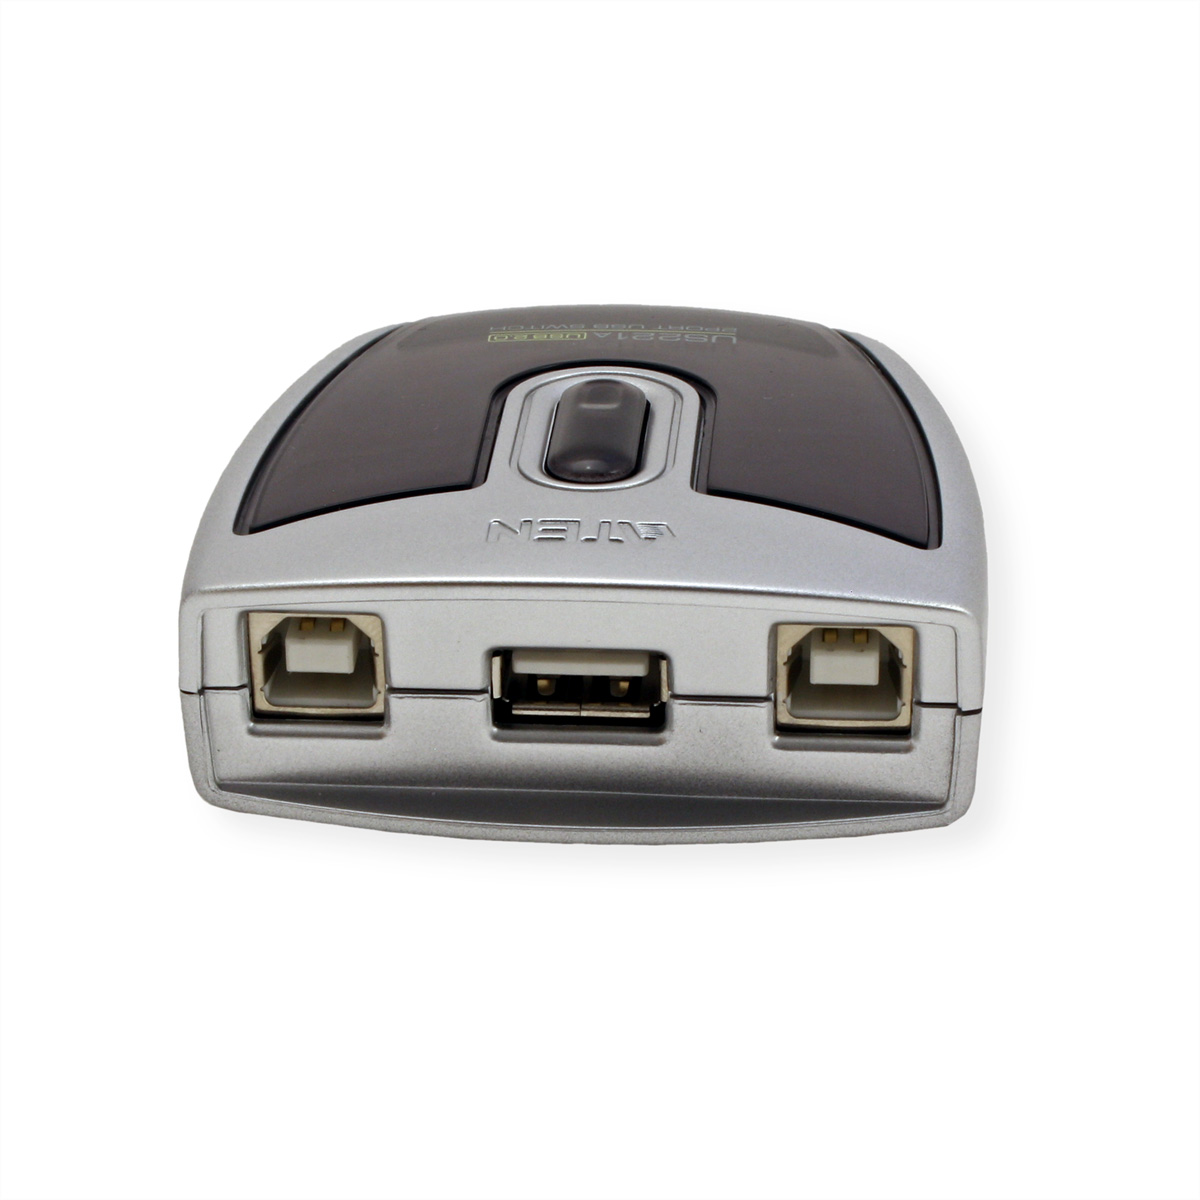 schwarz 2 USB Ports, US221A ATEN Switchbox, 2.0-Peripheriegeräte-Switch automatisch, mit